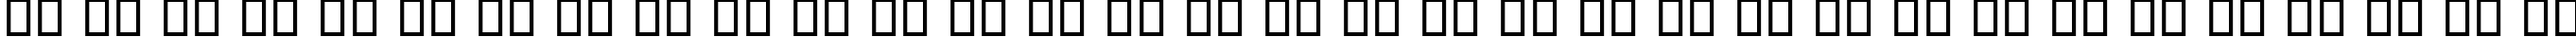 Пример написания русского алфавита шрифтом B Lotus